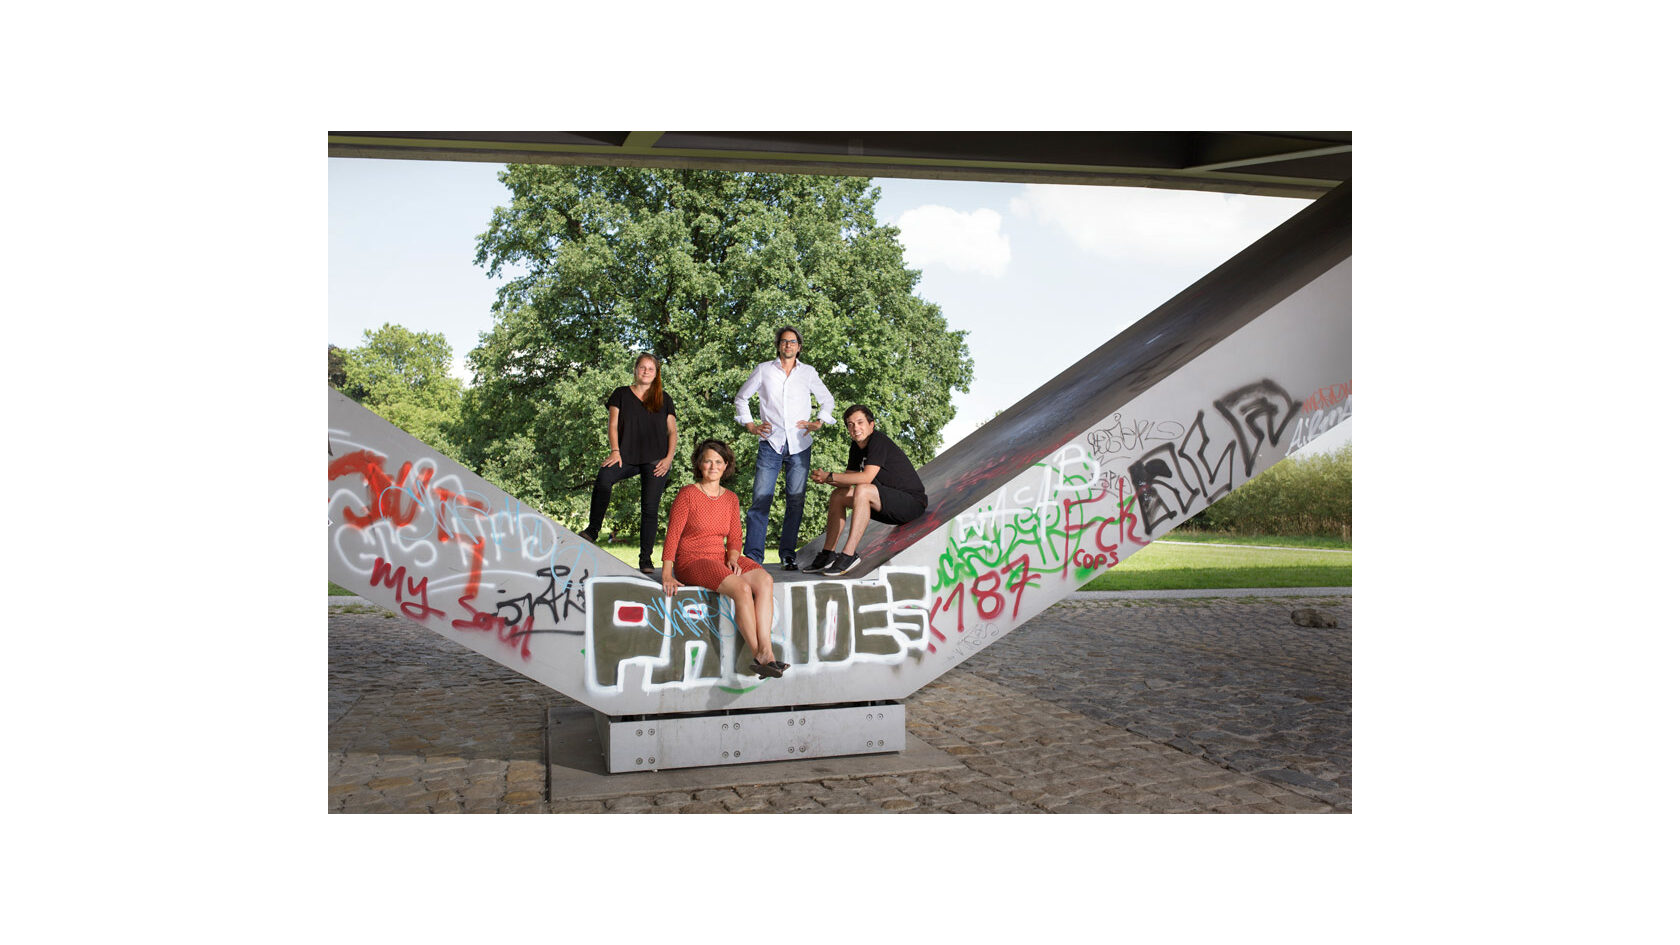 Portraitfoto der Initiatoren des Projekts "Brückenpark", Sophie Menzel und Markus Weber vom 248 Wheels e. V. sowie Benjamin Grill und Pamela Jäger von G.N.b.h. Architekten. Sie befinden sich unterhalb der Waldschlösschenbrücke.